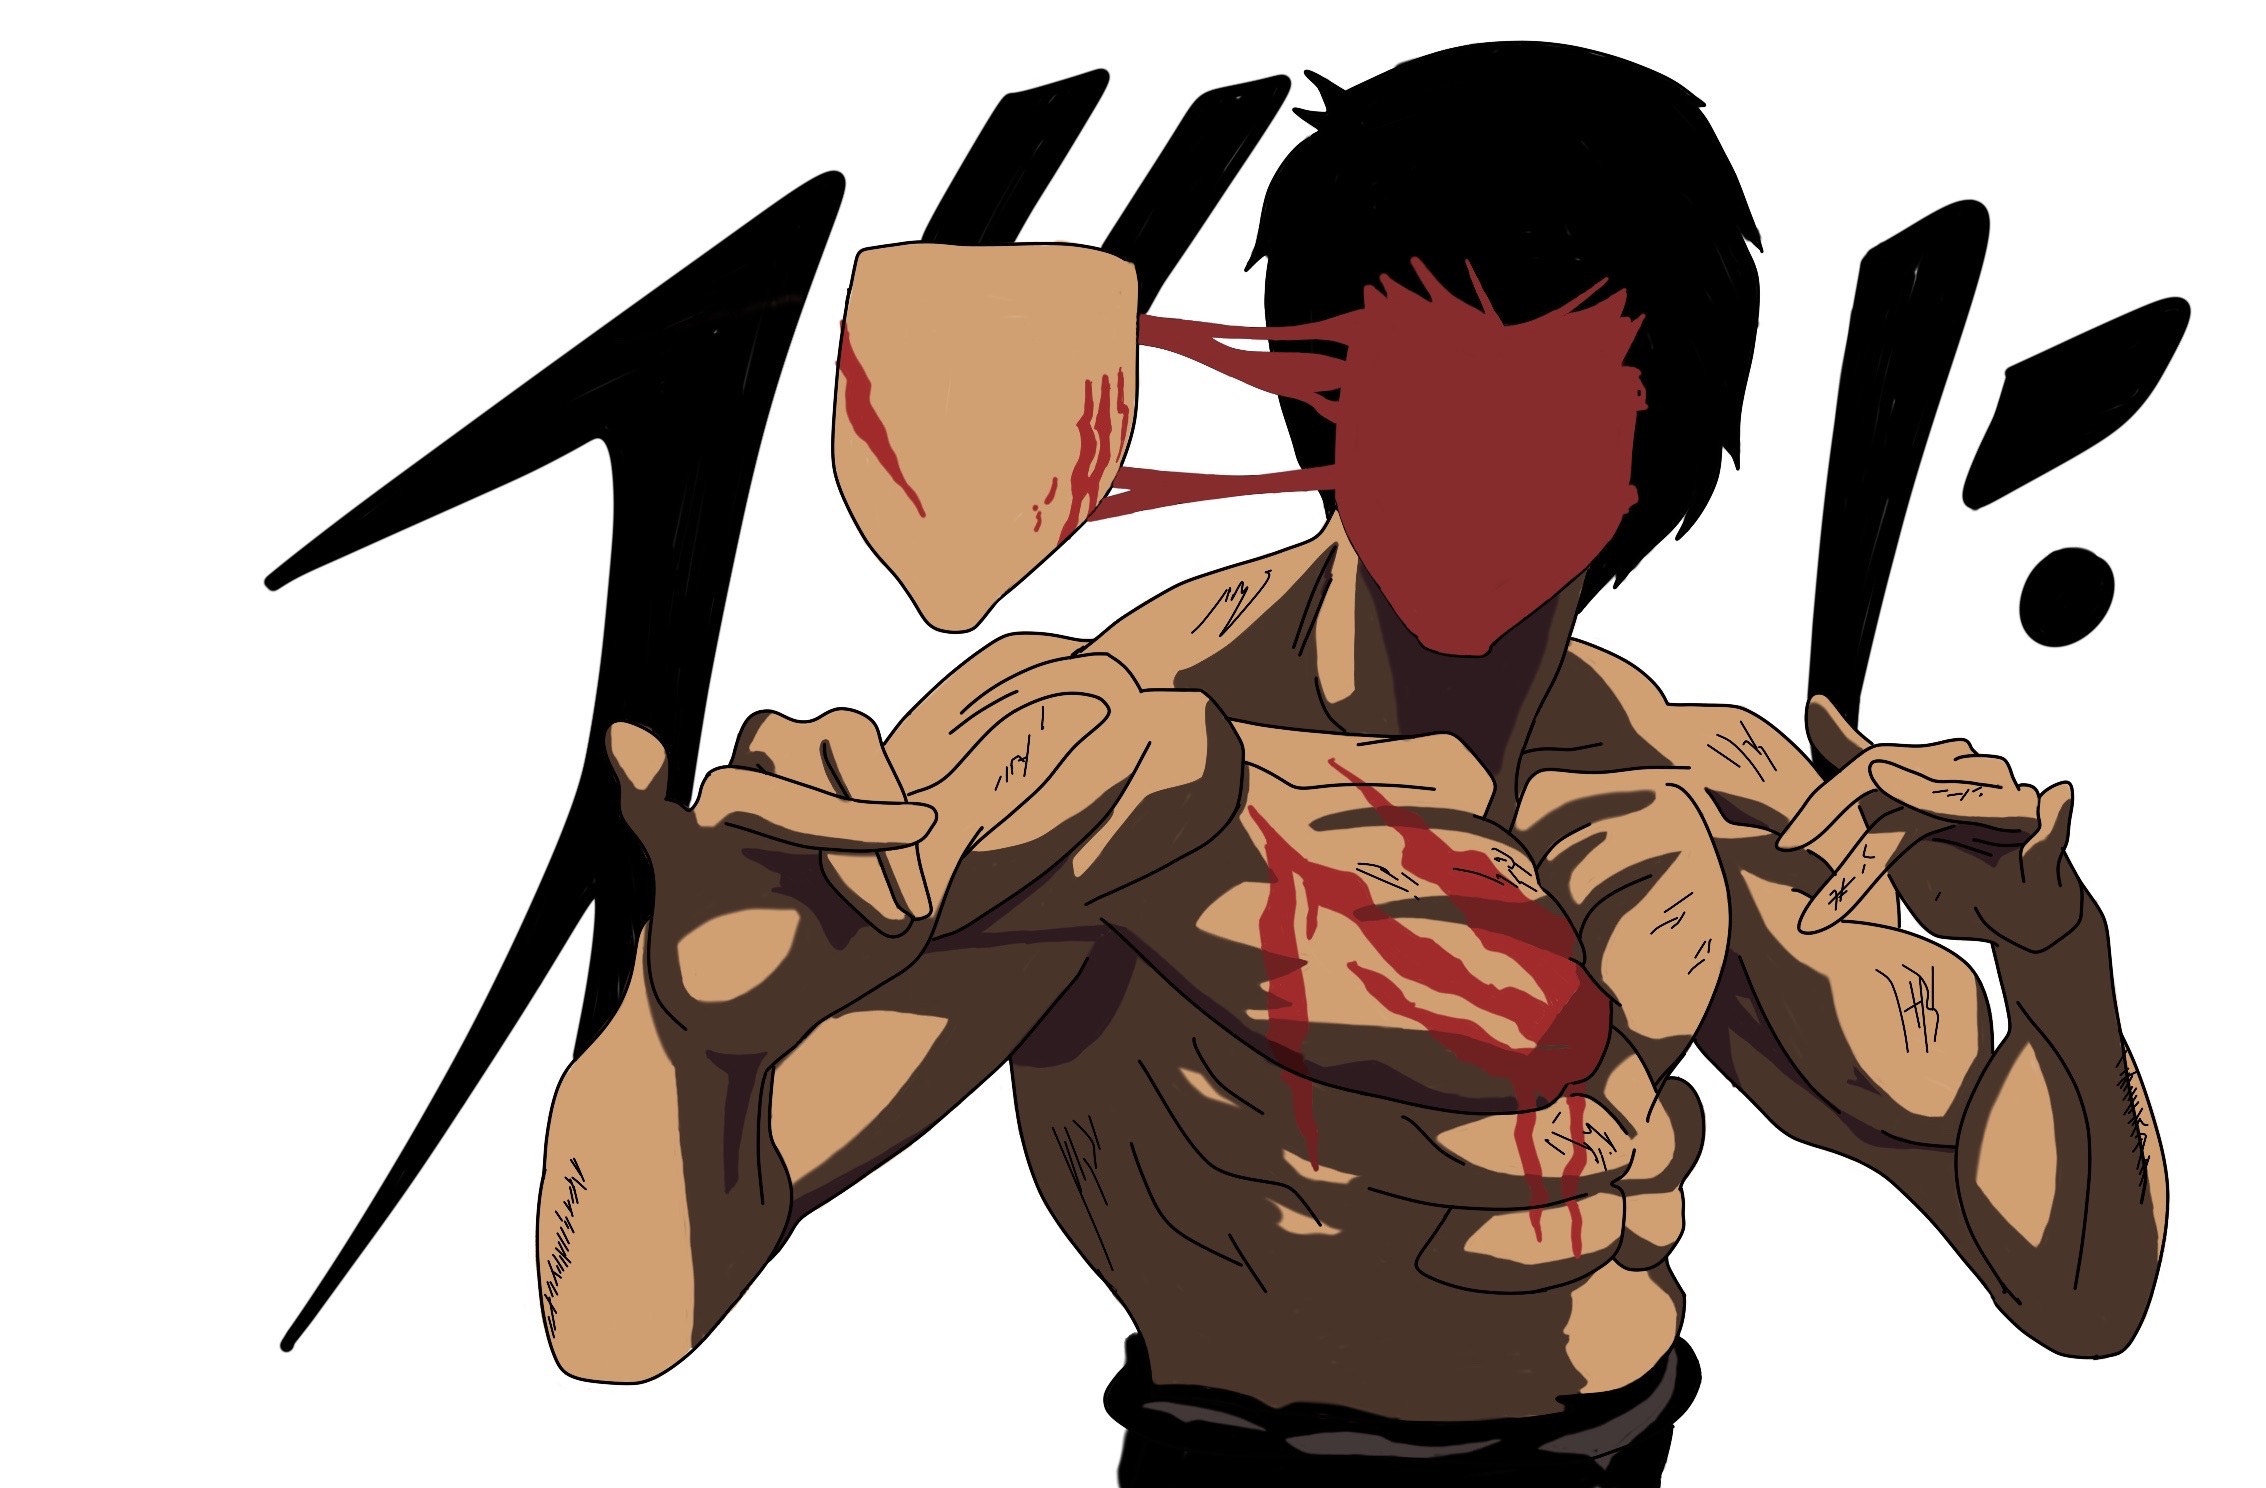 Anime Bruce Lee by masonwason on DeviantArt